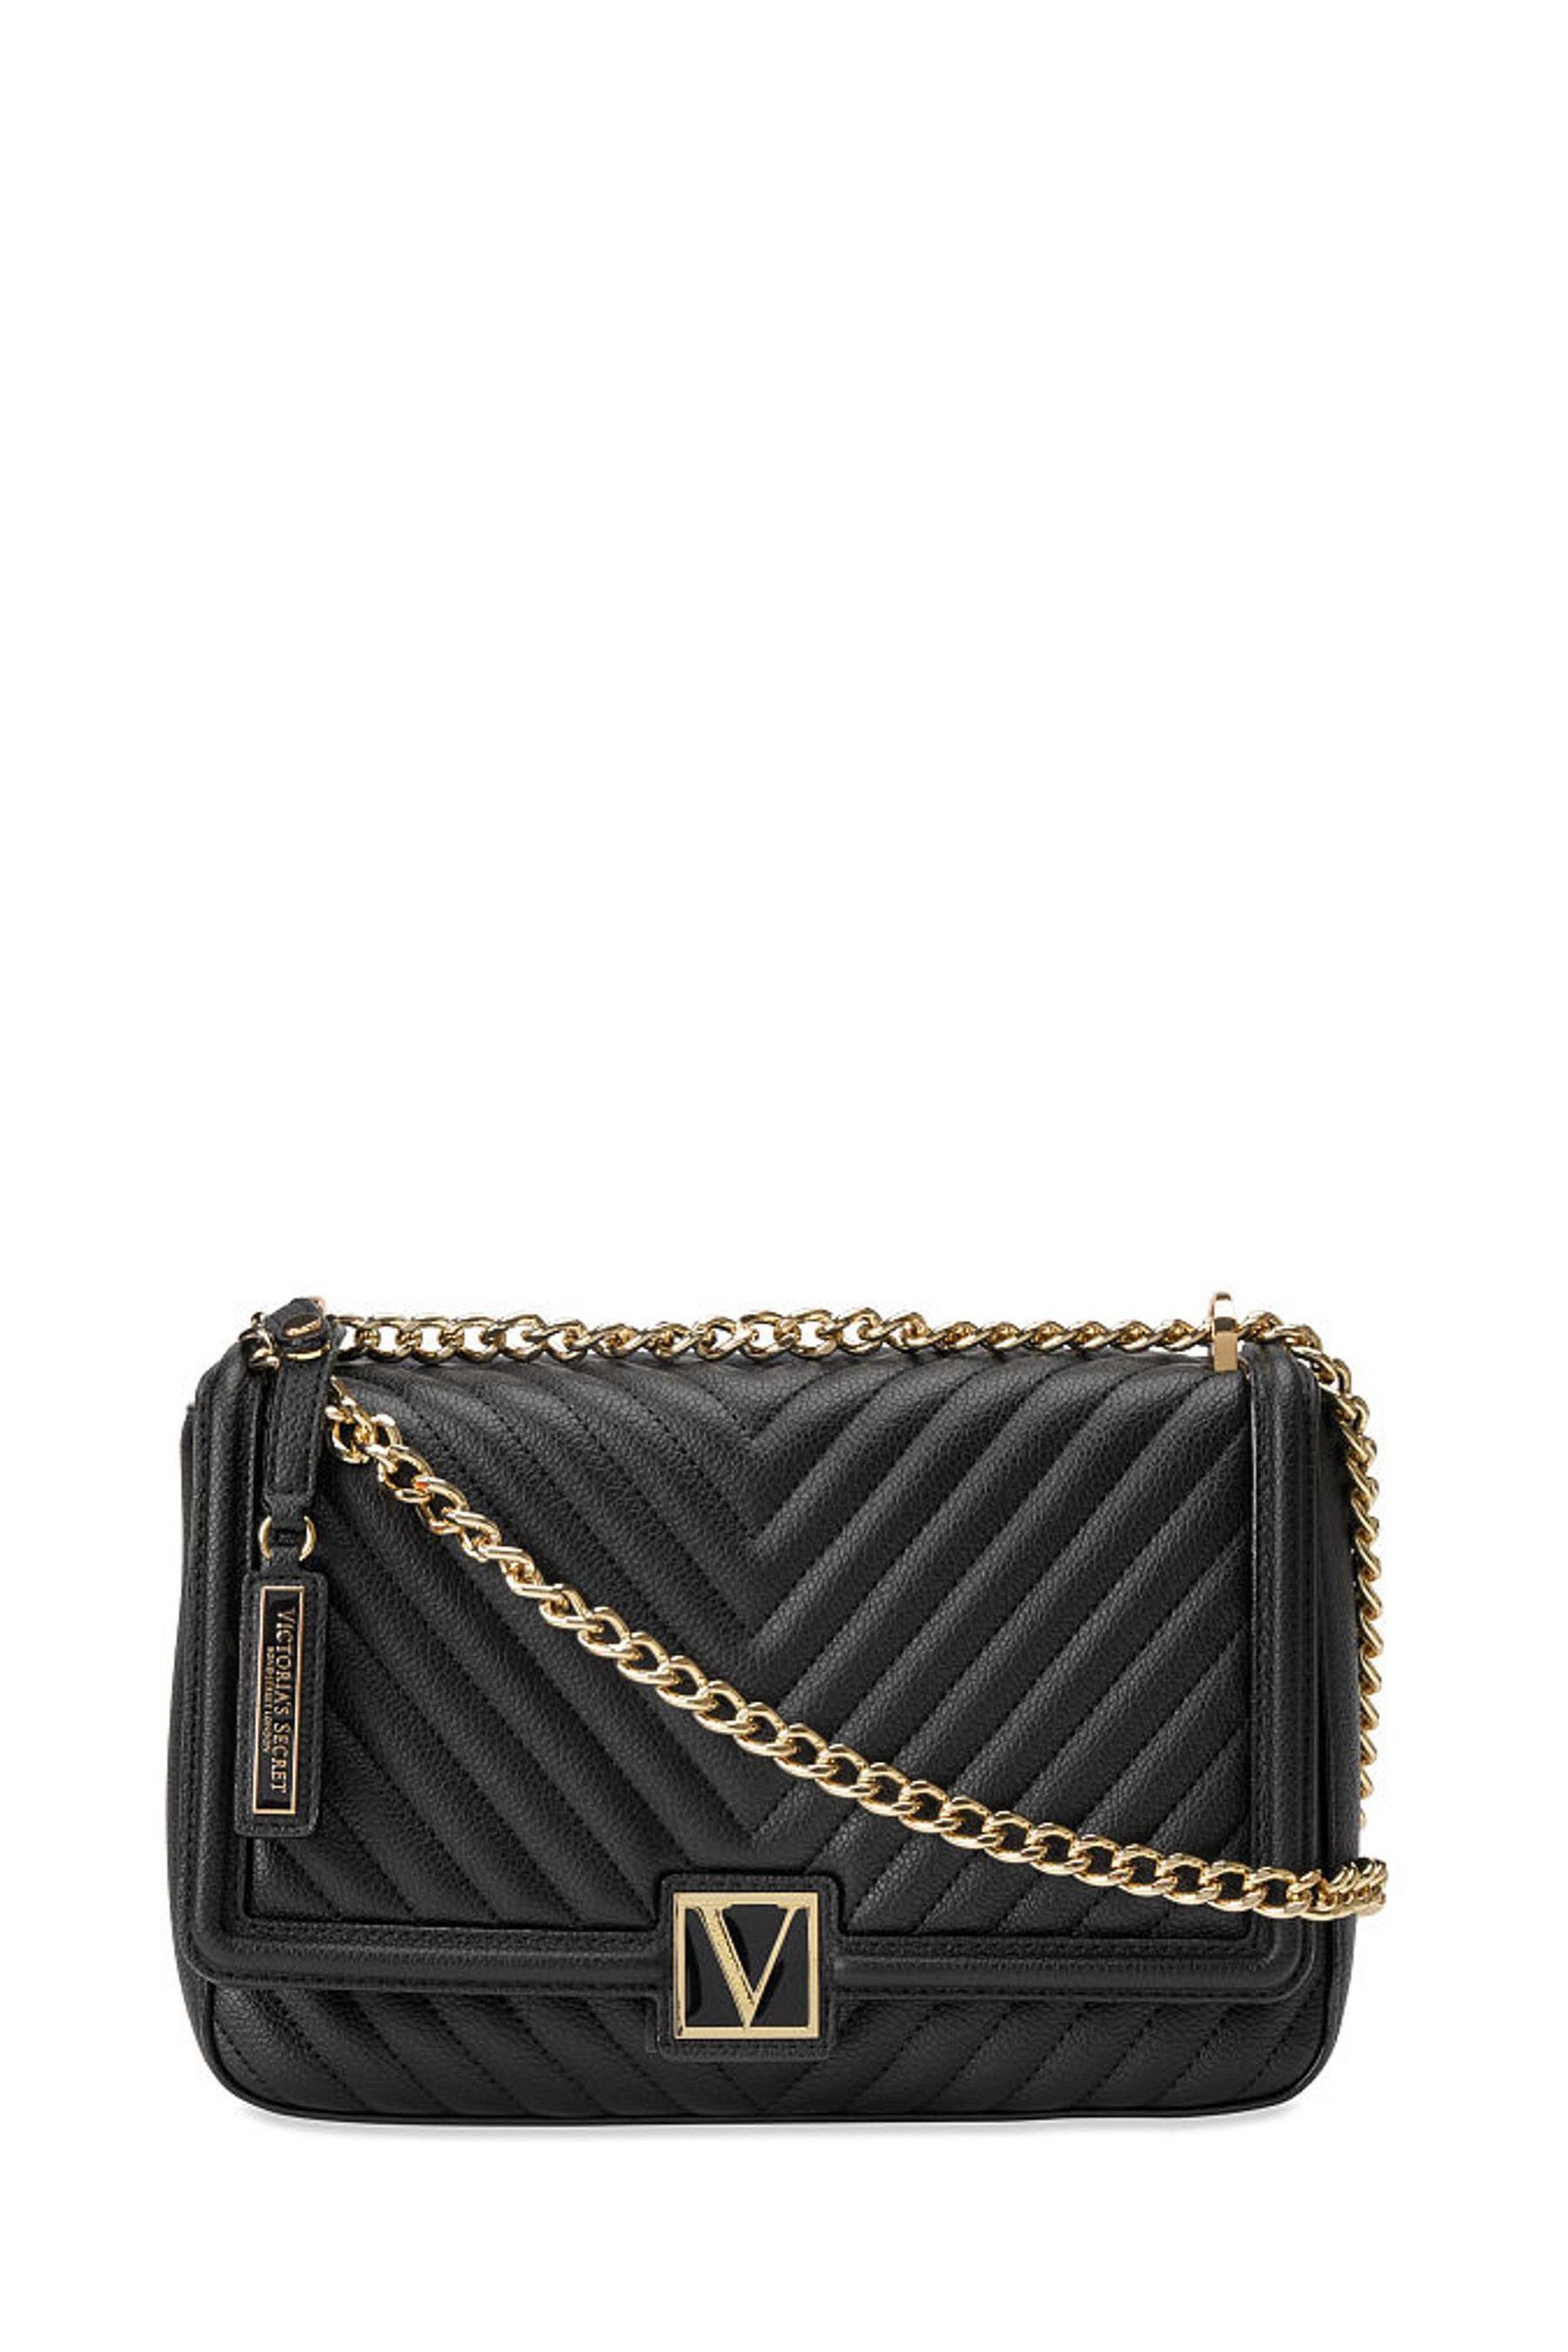 Buy Victoria's Secret Black Lily Victoria's Secret Medium Shoulder Bag ...